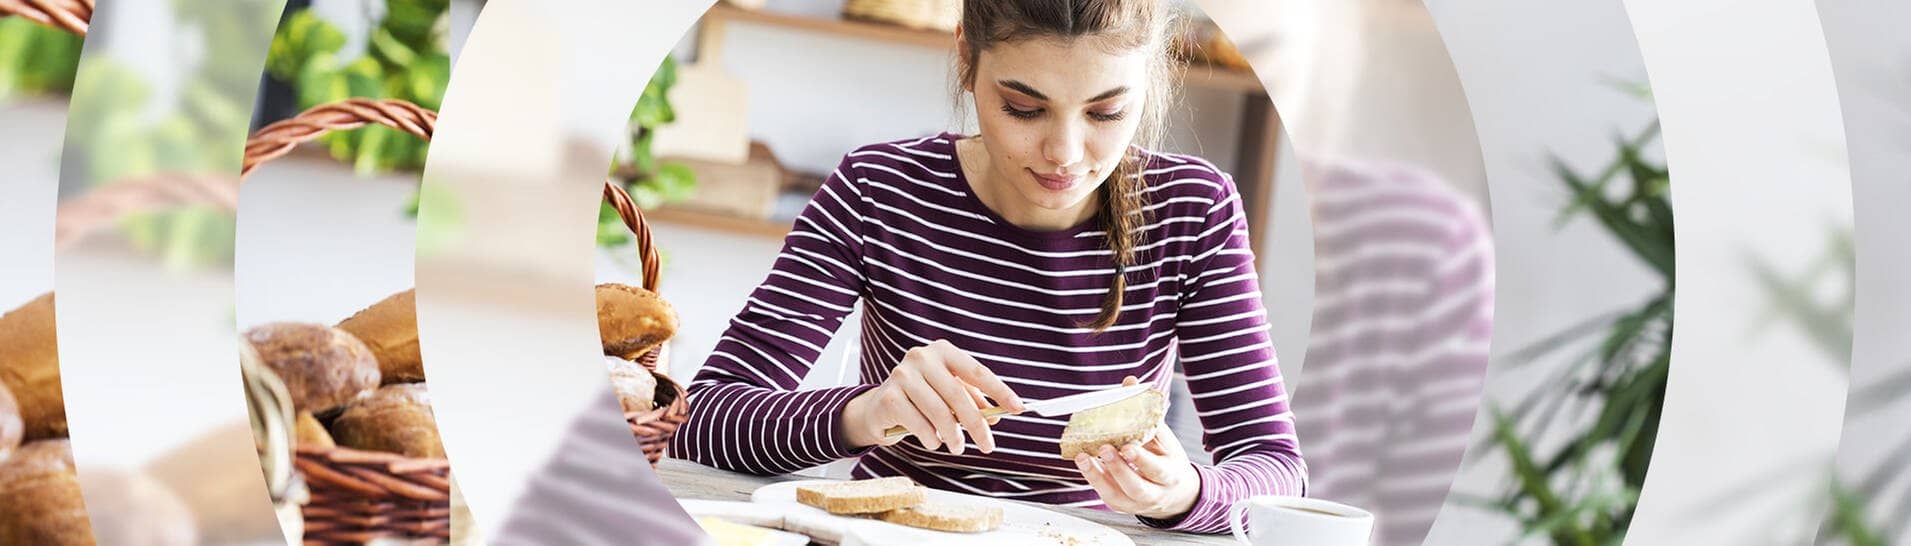 Junge Frau sitzt in der Küche am Frühstückstisch und schmiert sich ein Brot mit Butter (Foto: Adobe Stock/sebra)